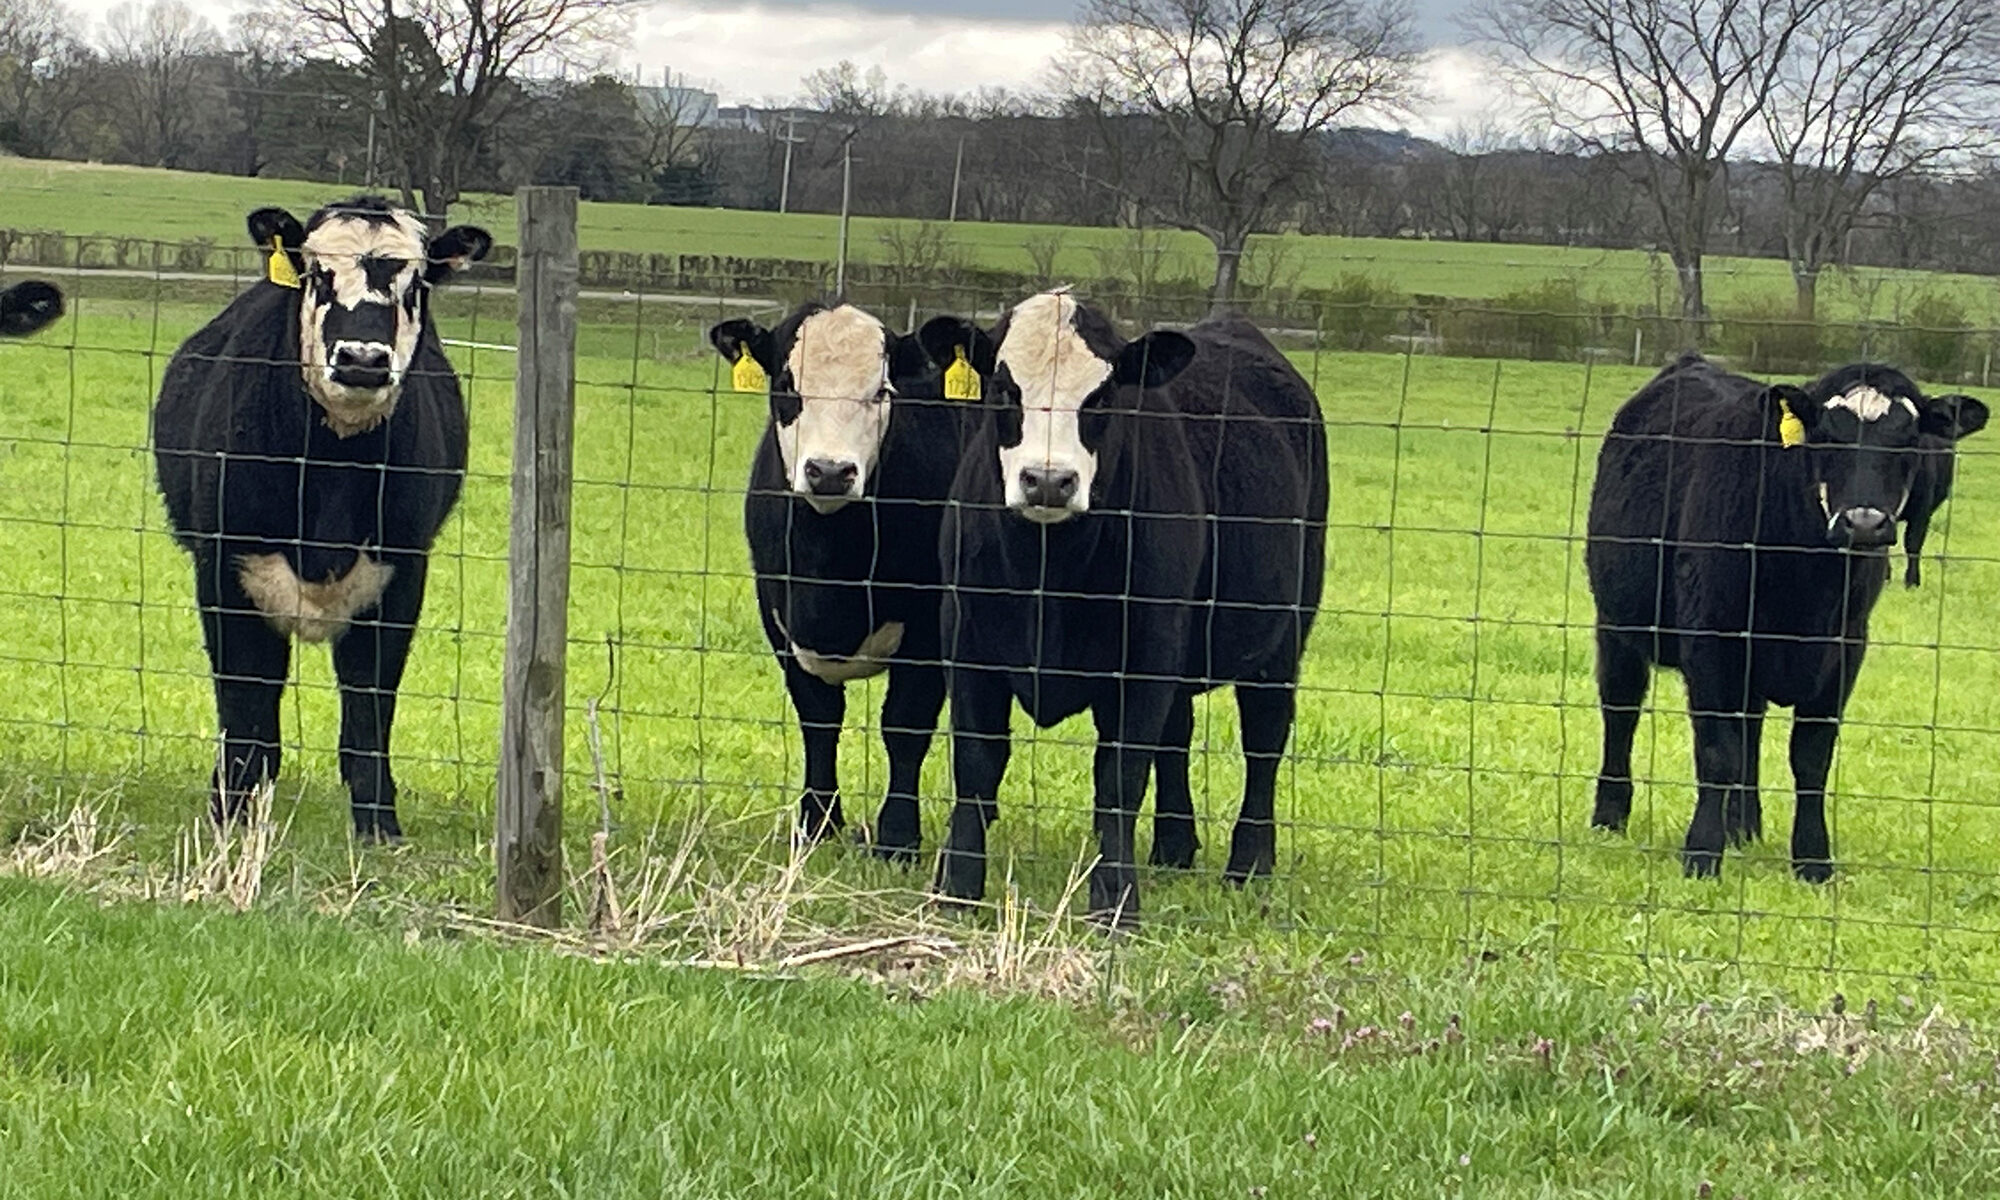 herd of cows in pasture